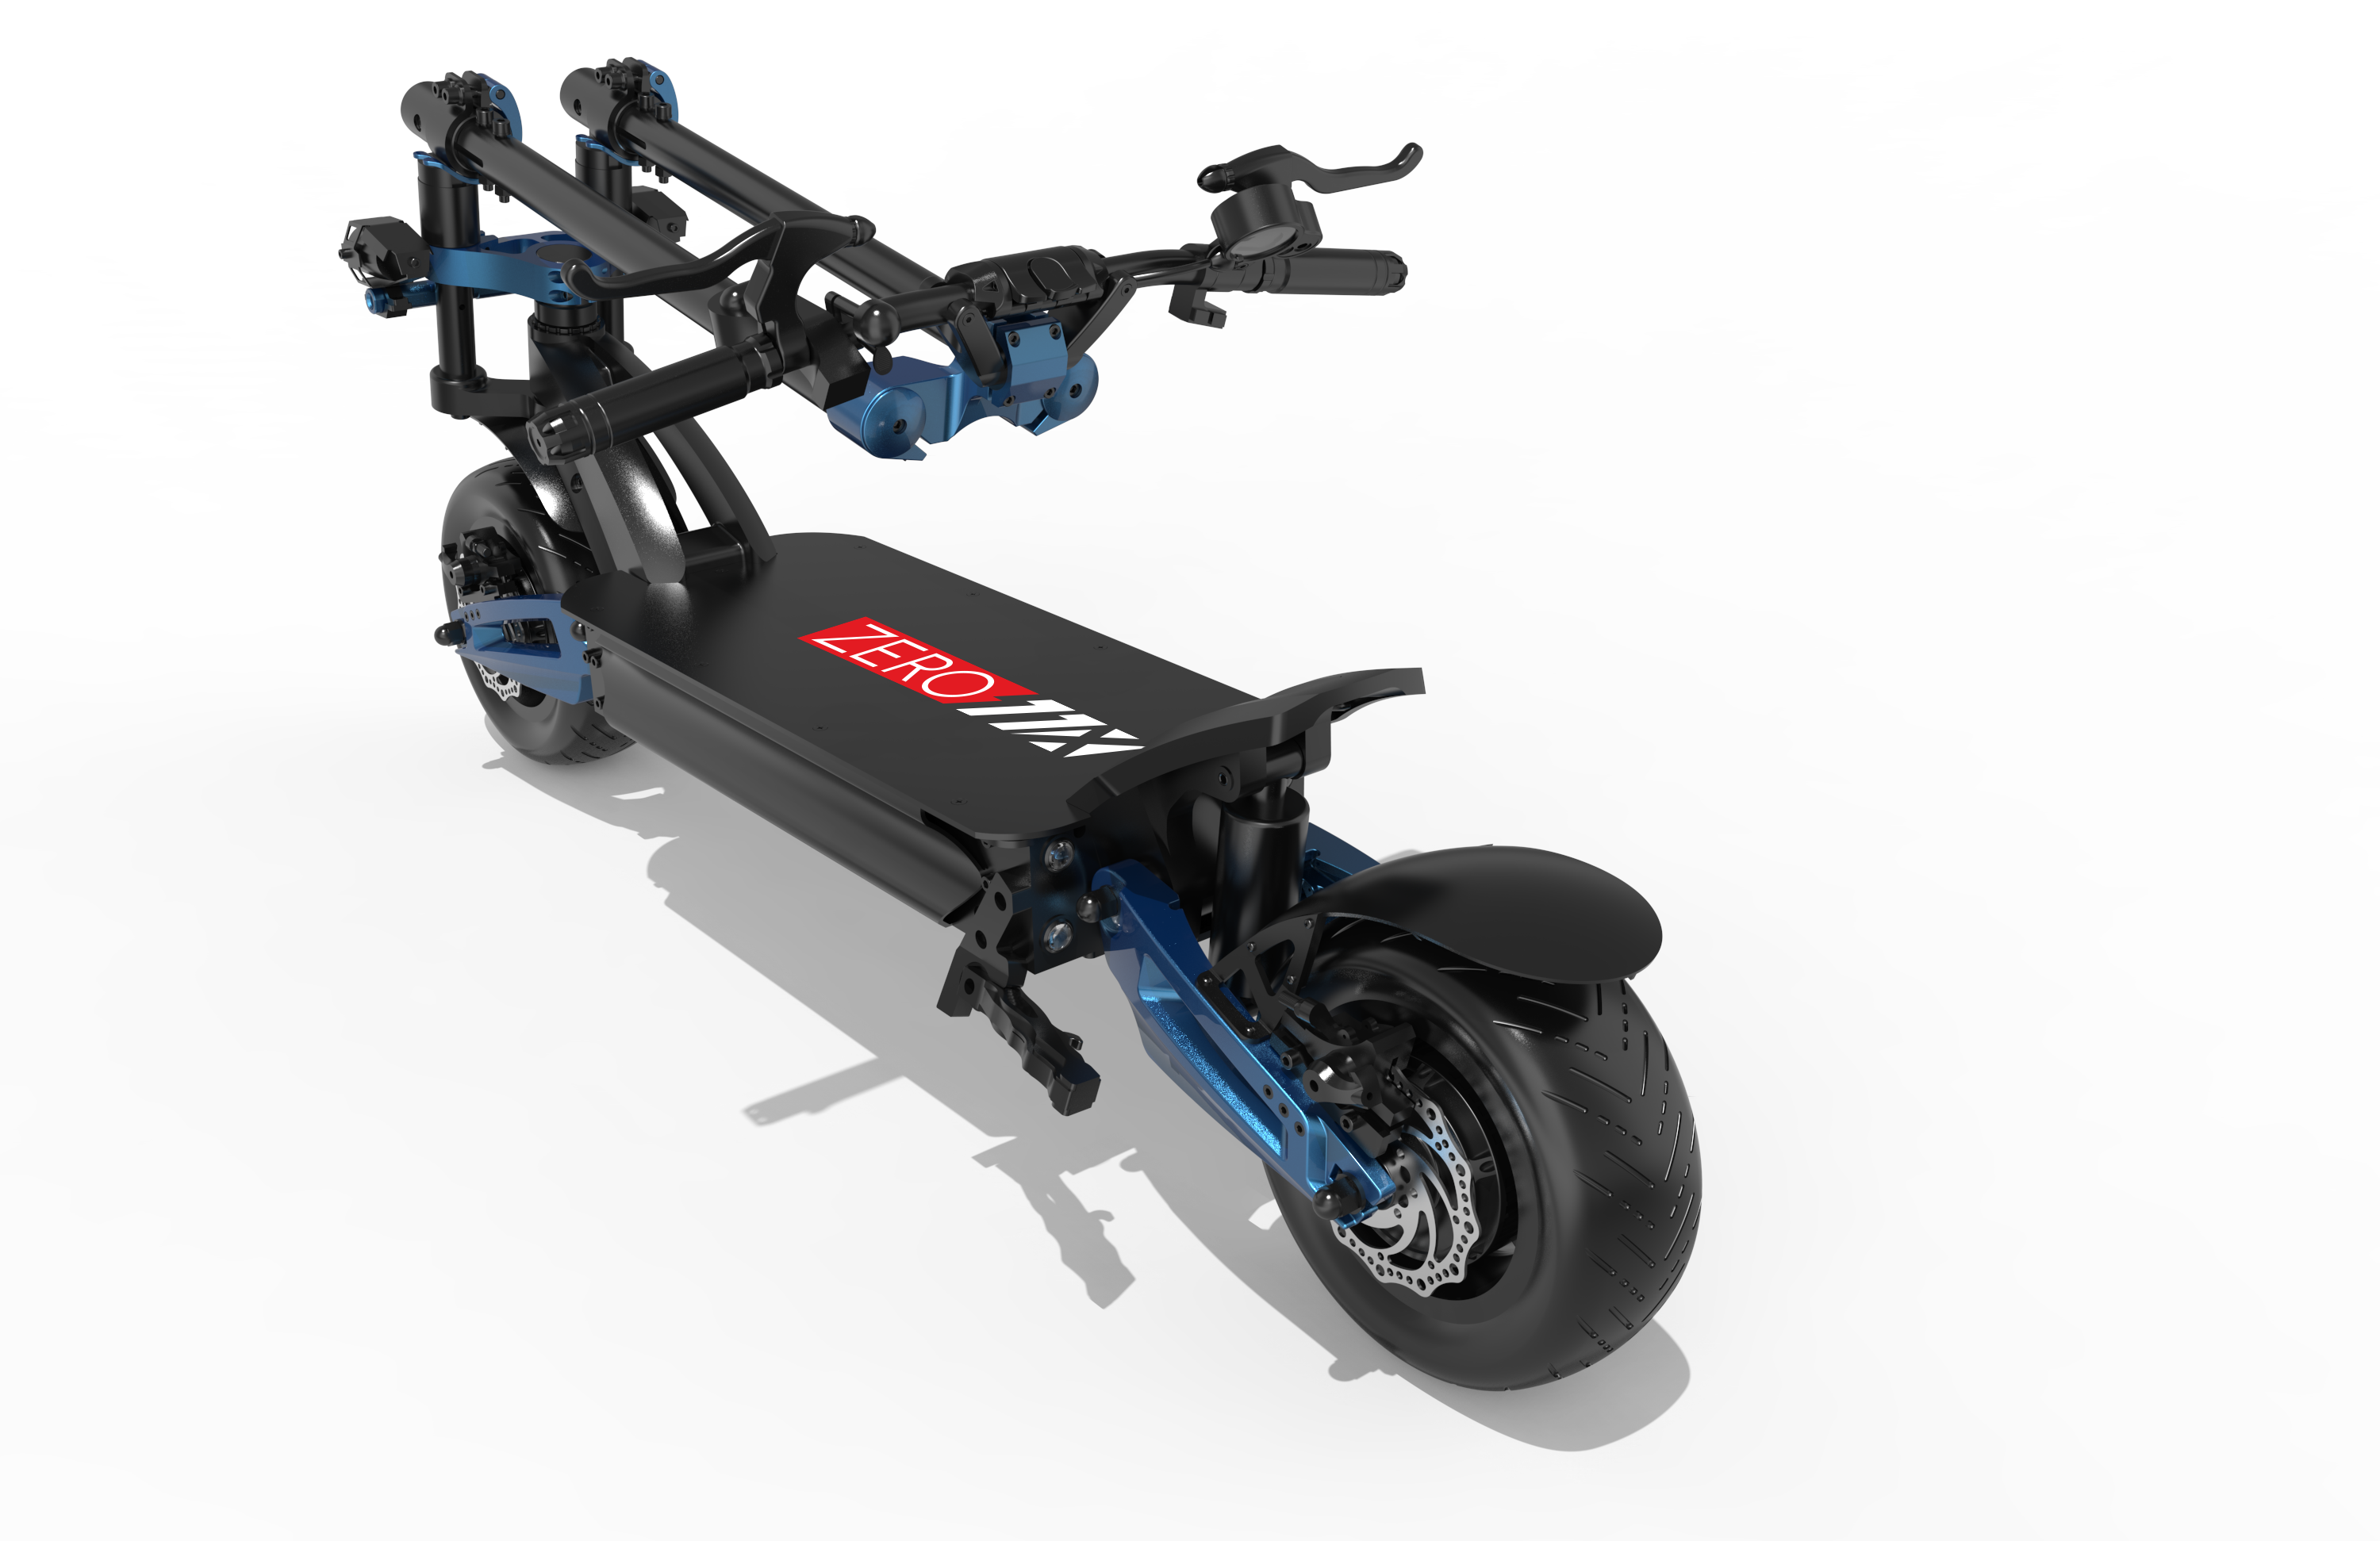 Zero 11X Electric Scooter, E-Scooter, Falcon Pev